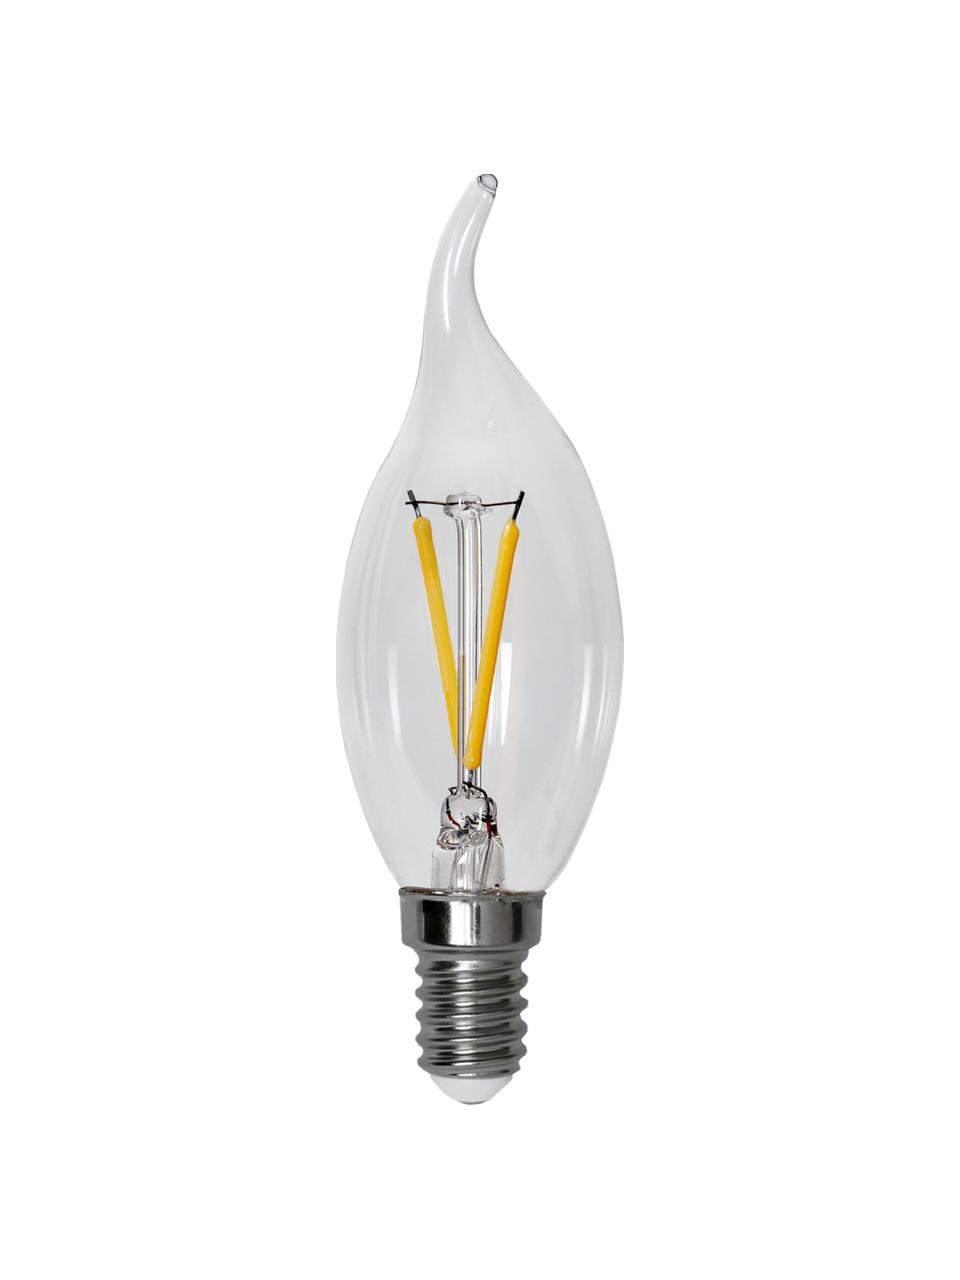 E14 Leuchtmittel, 150lm, warmweiss, 8 Stück, Leuchtmittelschirm: Glas, Leuchtmittelfassung: Aluminium, Transparent, Ø 4 x H 12 cm